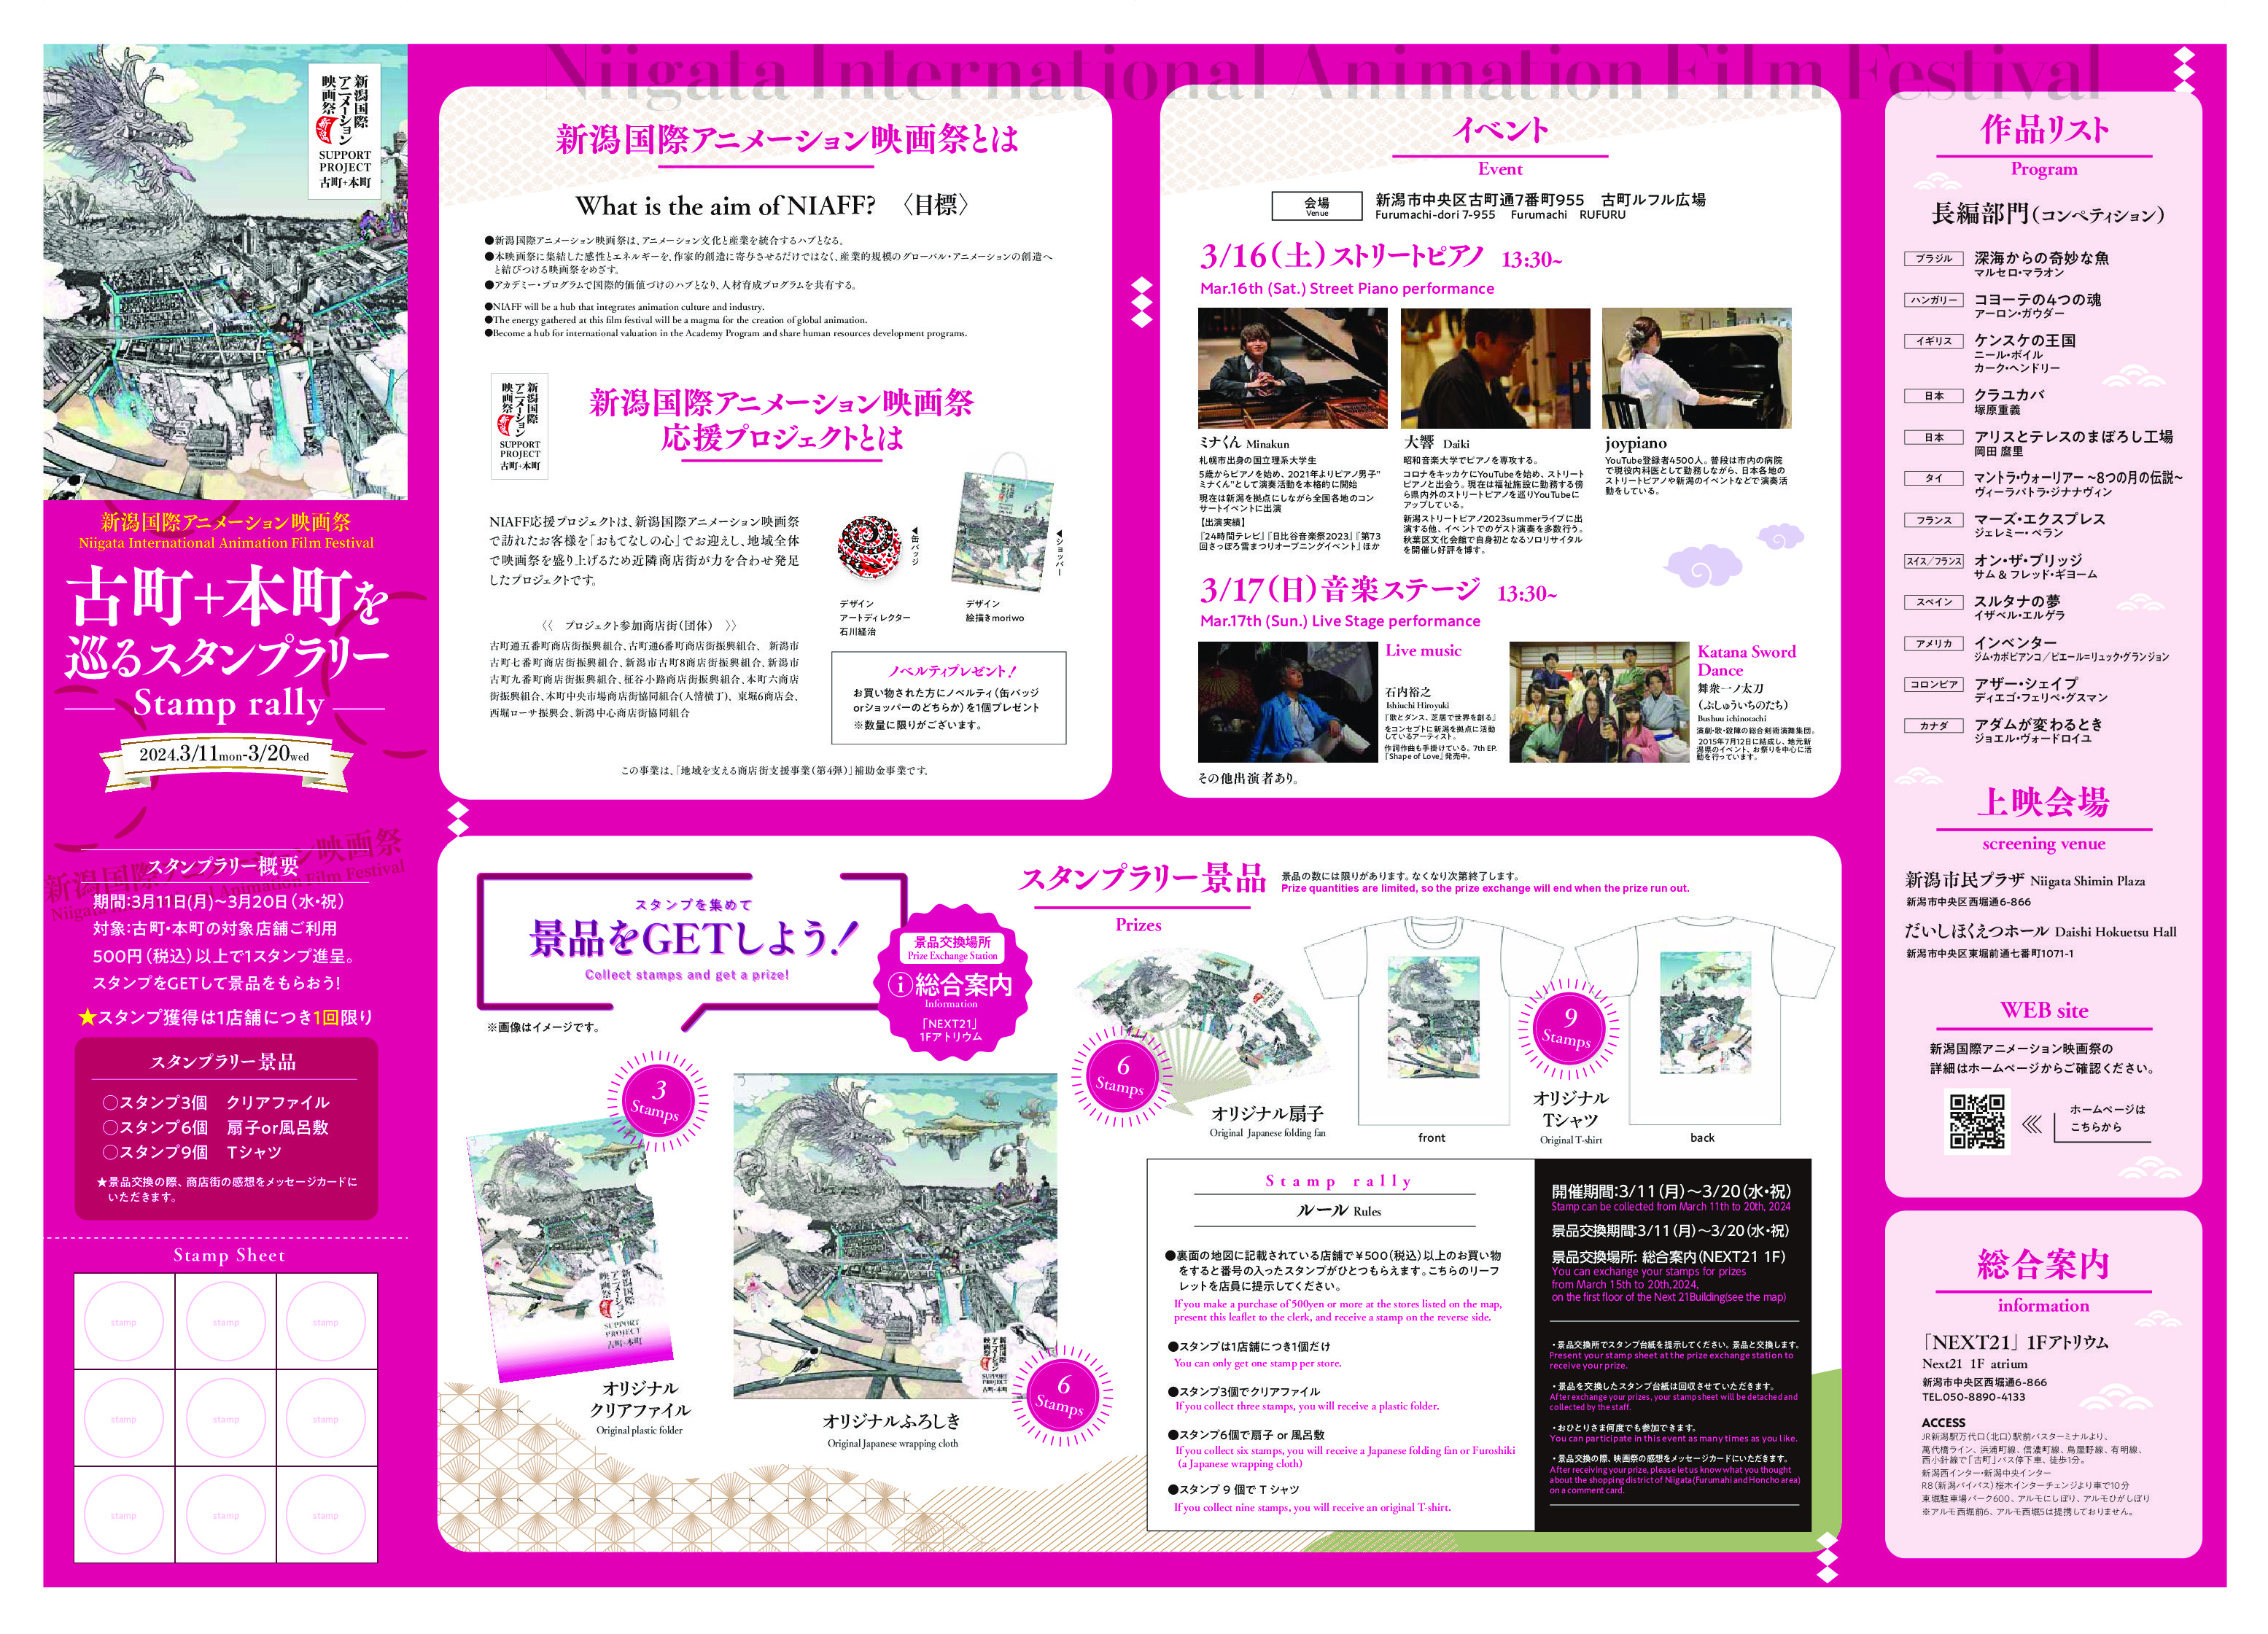 新潟国際アニメーション映画祭の古町応援プロジェクトのイベント